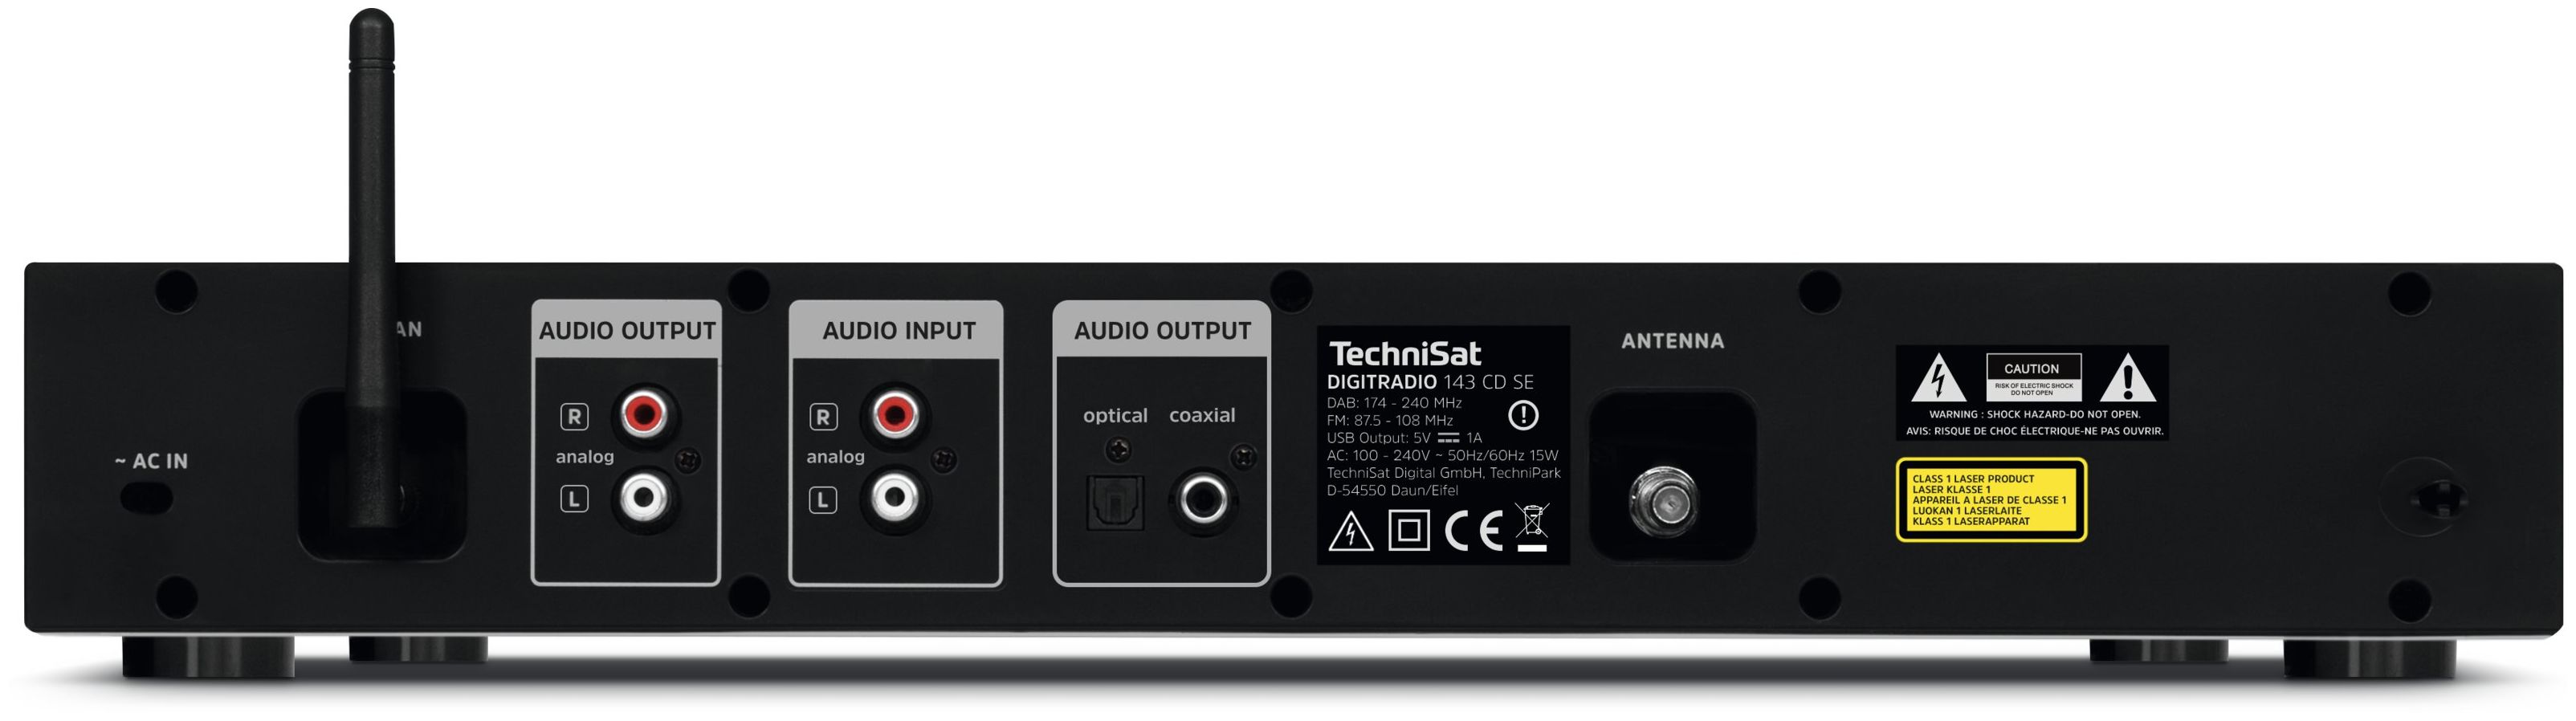 TechniSat DigitRadio DAB+, 143 Internet Bluetooth FM (Schwarz) expert Radio von Technomarkt